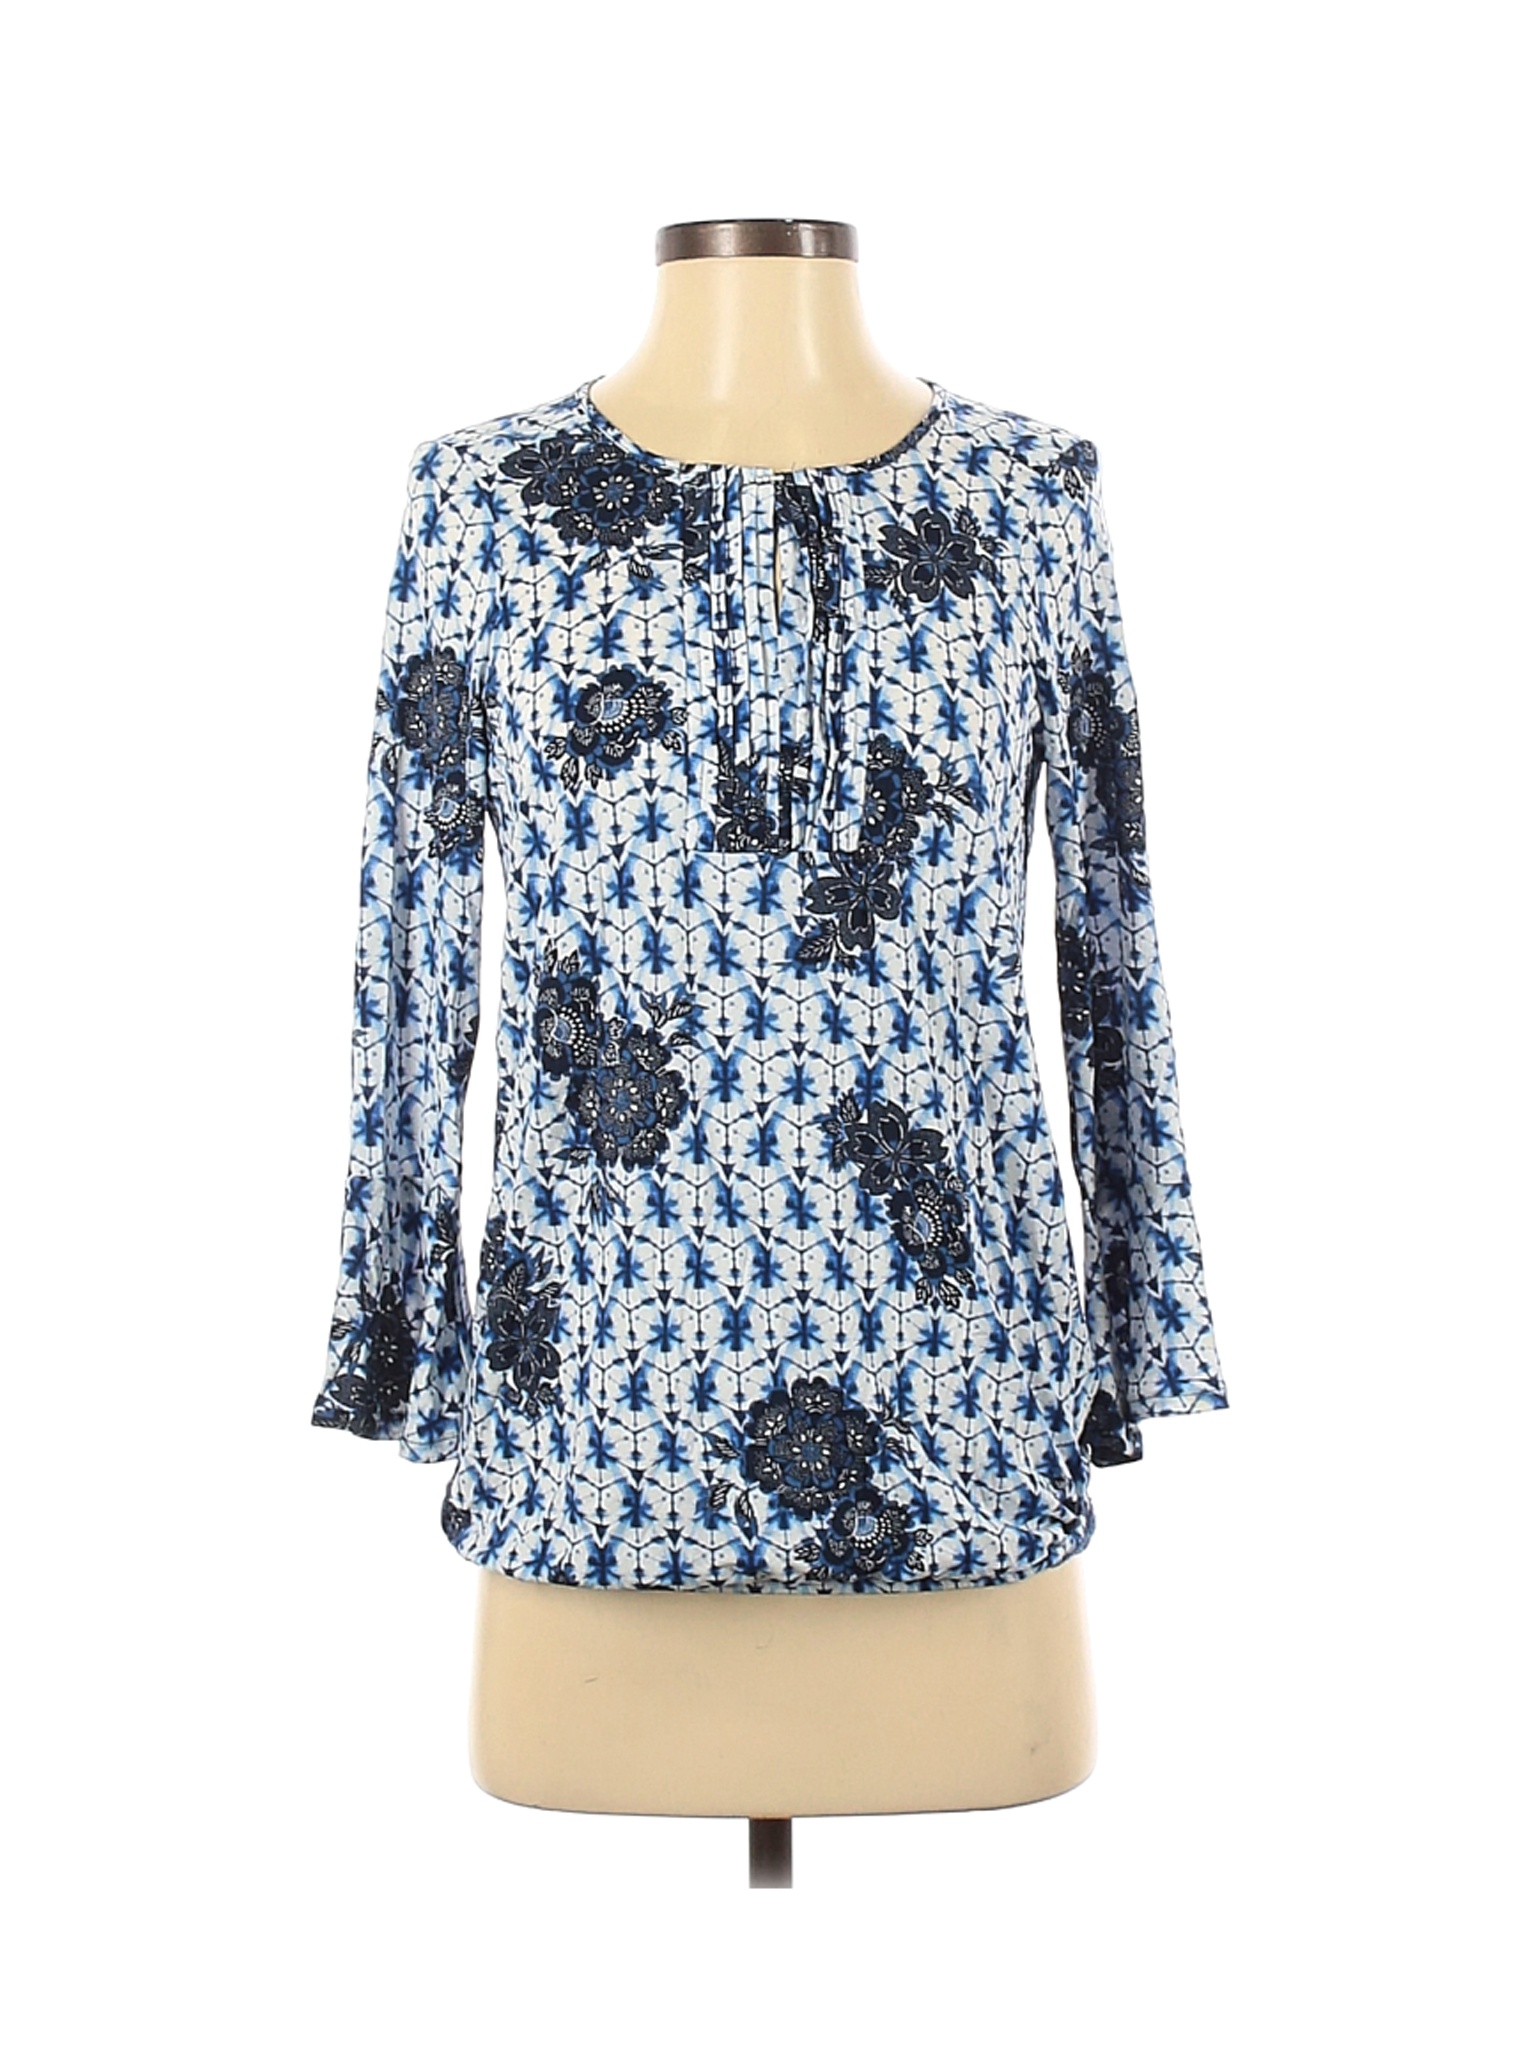 Olsen Women Blue Long Sleeve Top XS | eBay